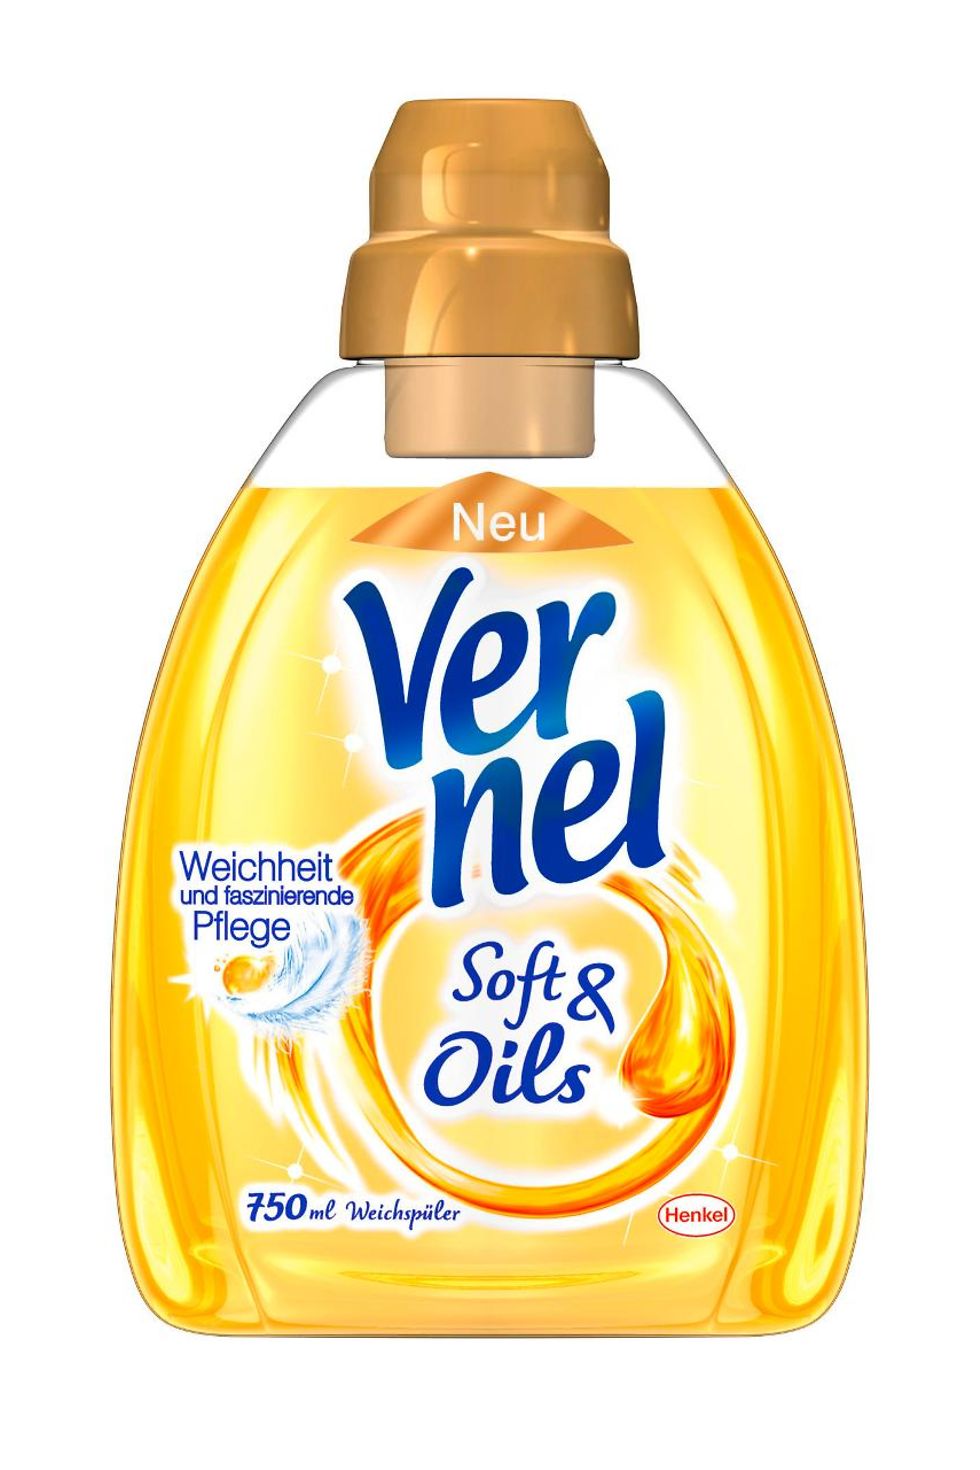 Vernel Soft & Oils überzeugt auch optisch